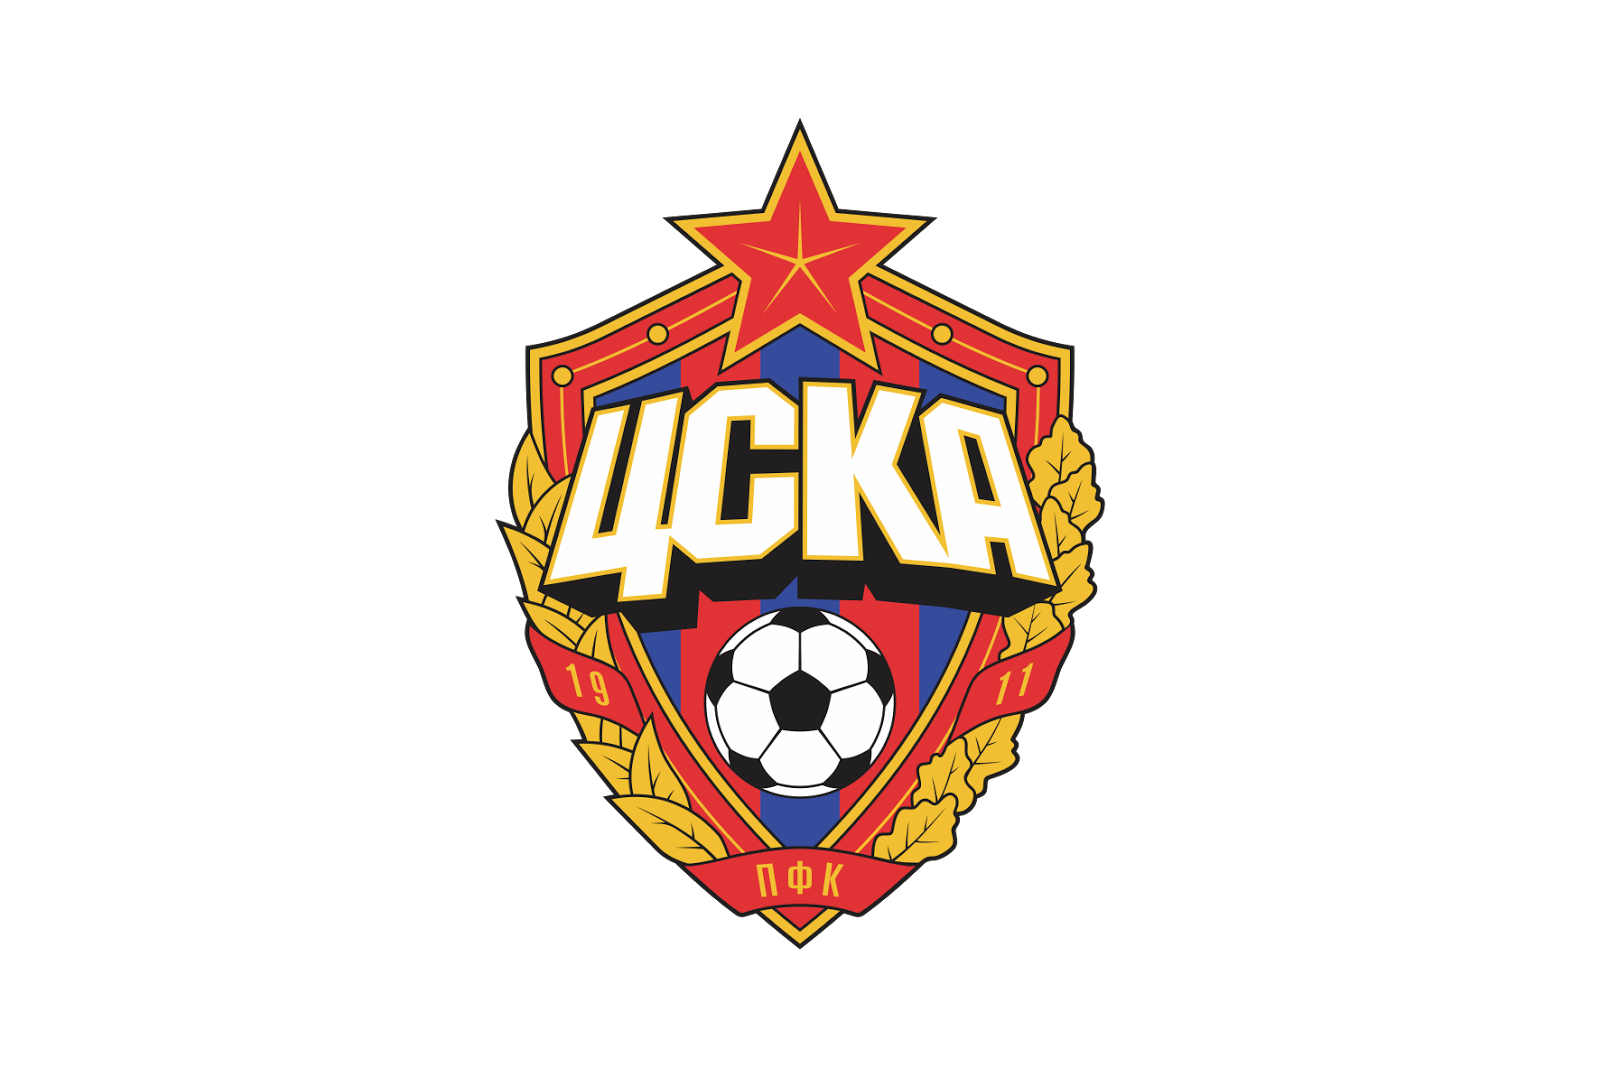 Escudo do CSKA Moscow.png